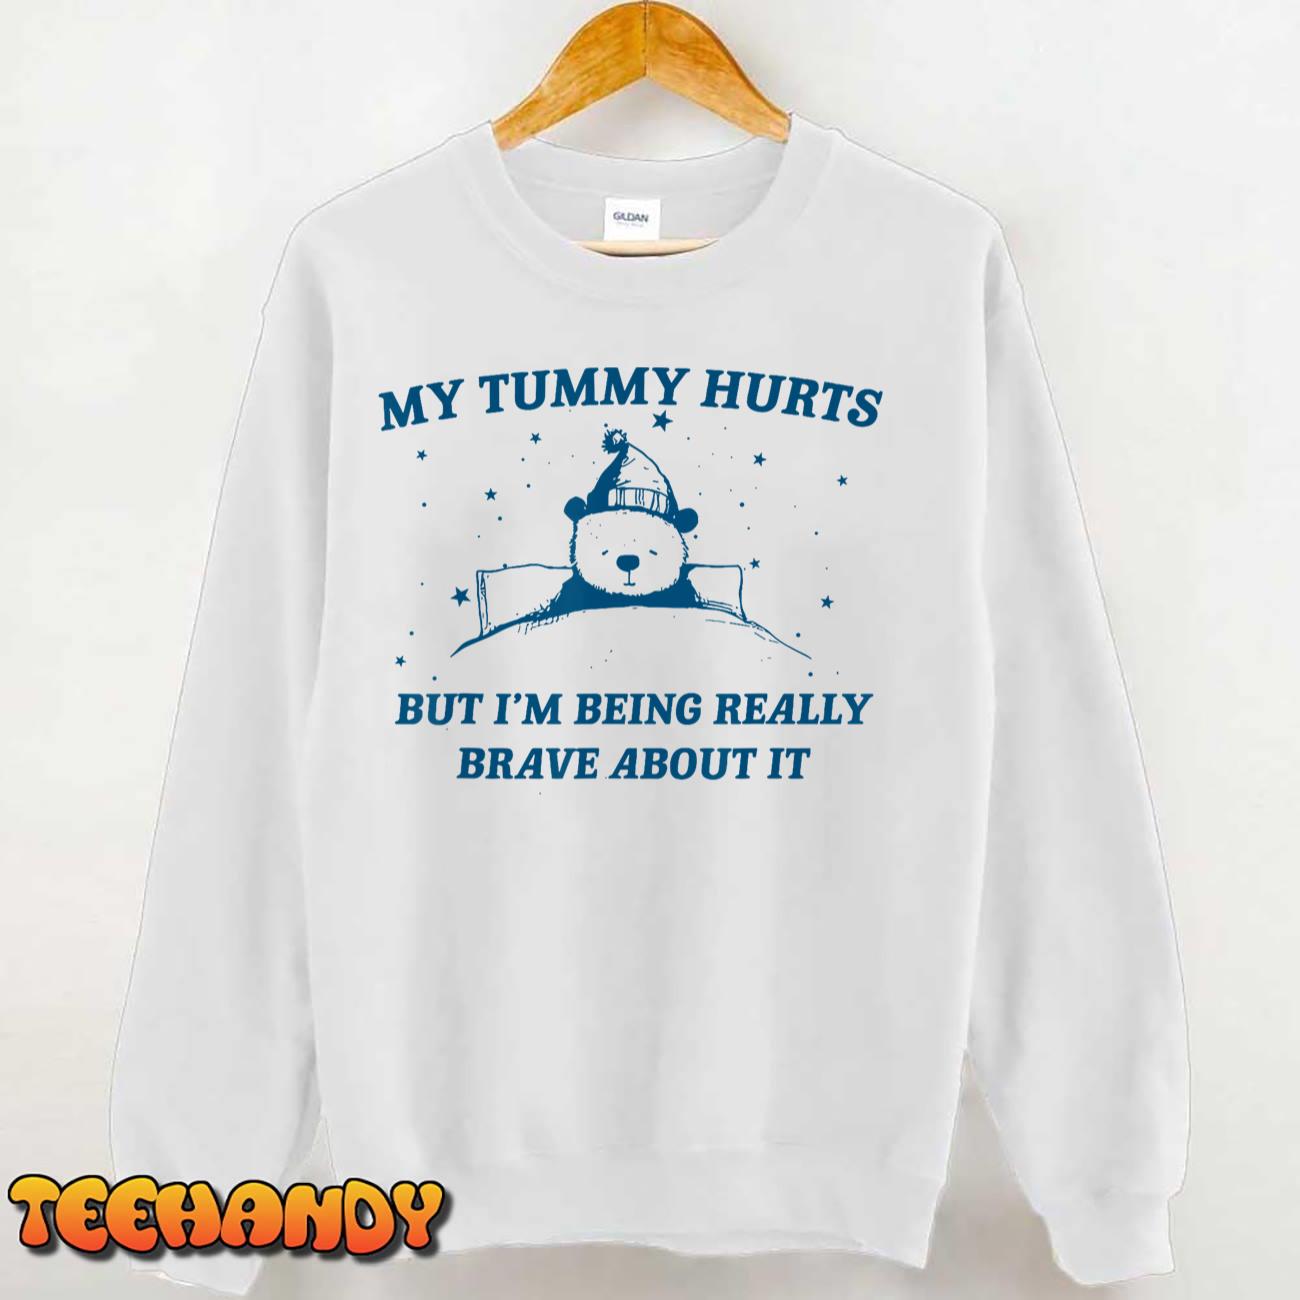 My Tummy Hurts Funny Bear Retro Cartoon Meme Old Cartoon T-Shirt